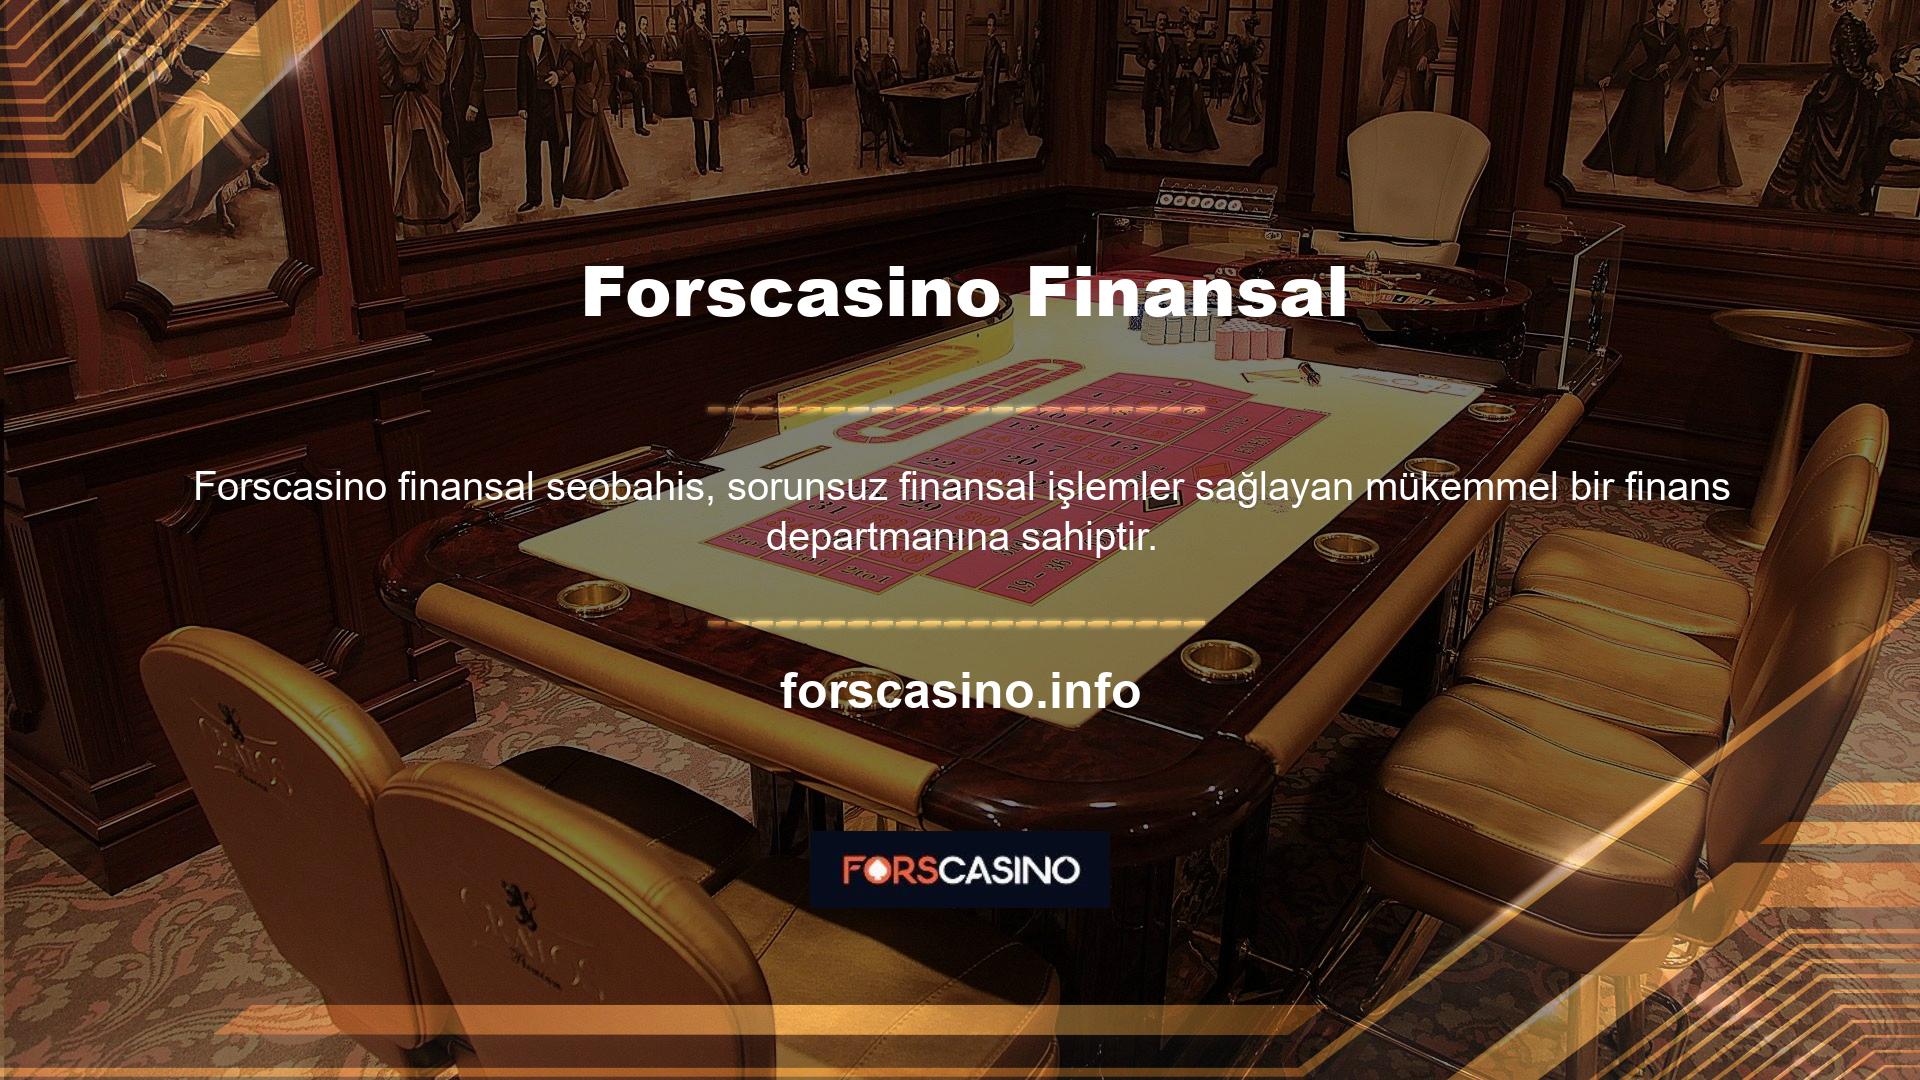 Sektördeki en güvenilir para yatırma sistemi ile hızlı para yatırma işlemleri için casino sizlere 30 dakika içerisinde ödeme yapma imkanı sunuyor